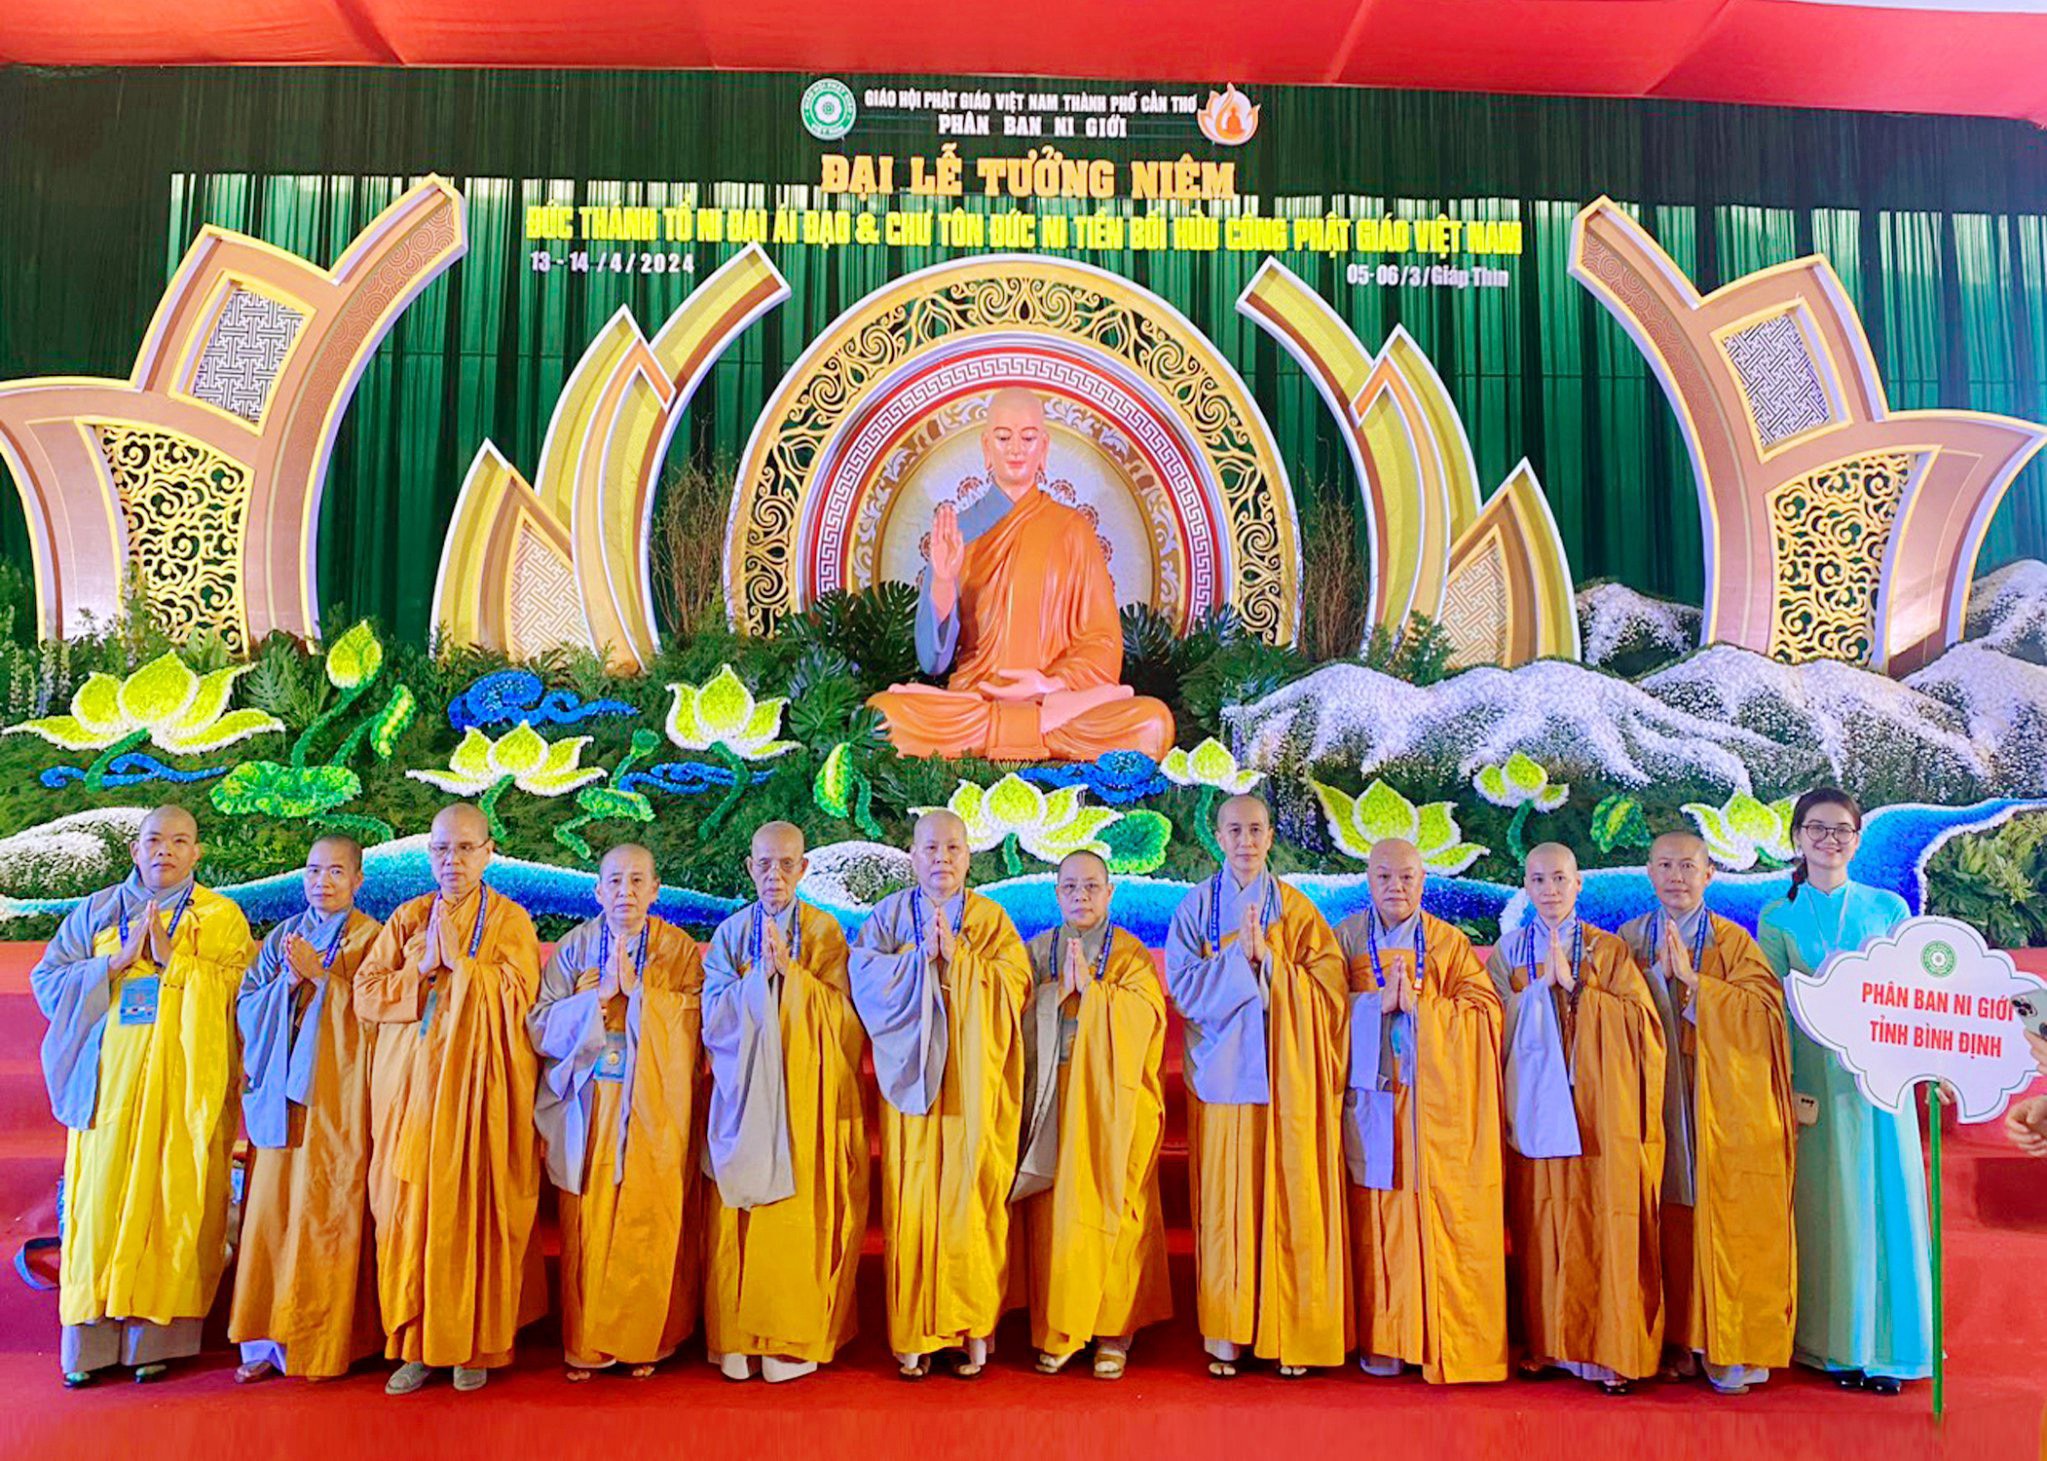 Phân Ban Ni giới tỉnh Bình Định tham dự Đại Lễ Tưởng niệm Đức Thánh Tổ Ni Đại Ái Đạo Kiều Đàm Di tại Tp. Cần Thơ